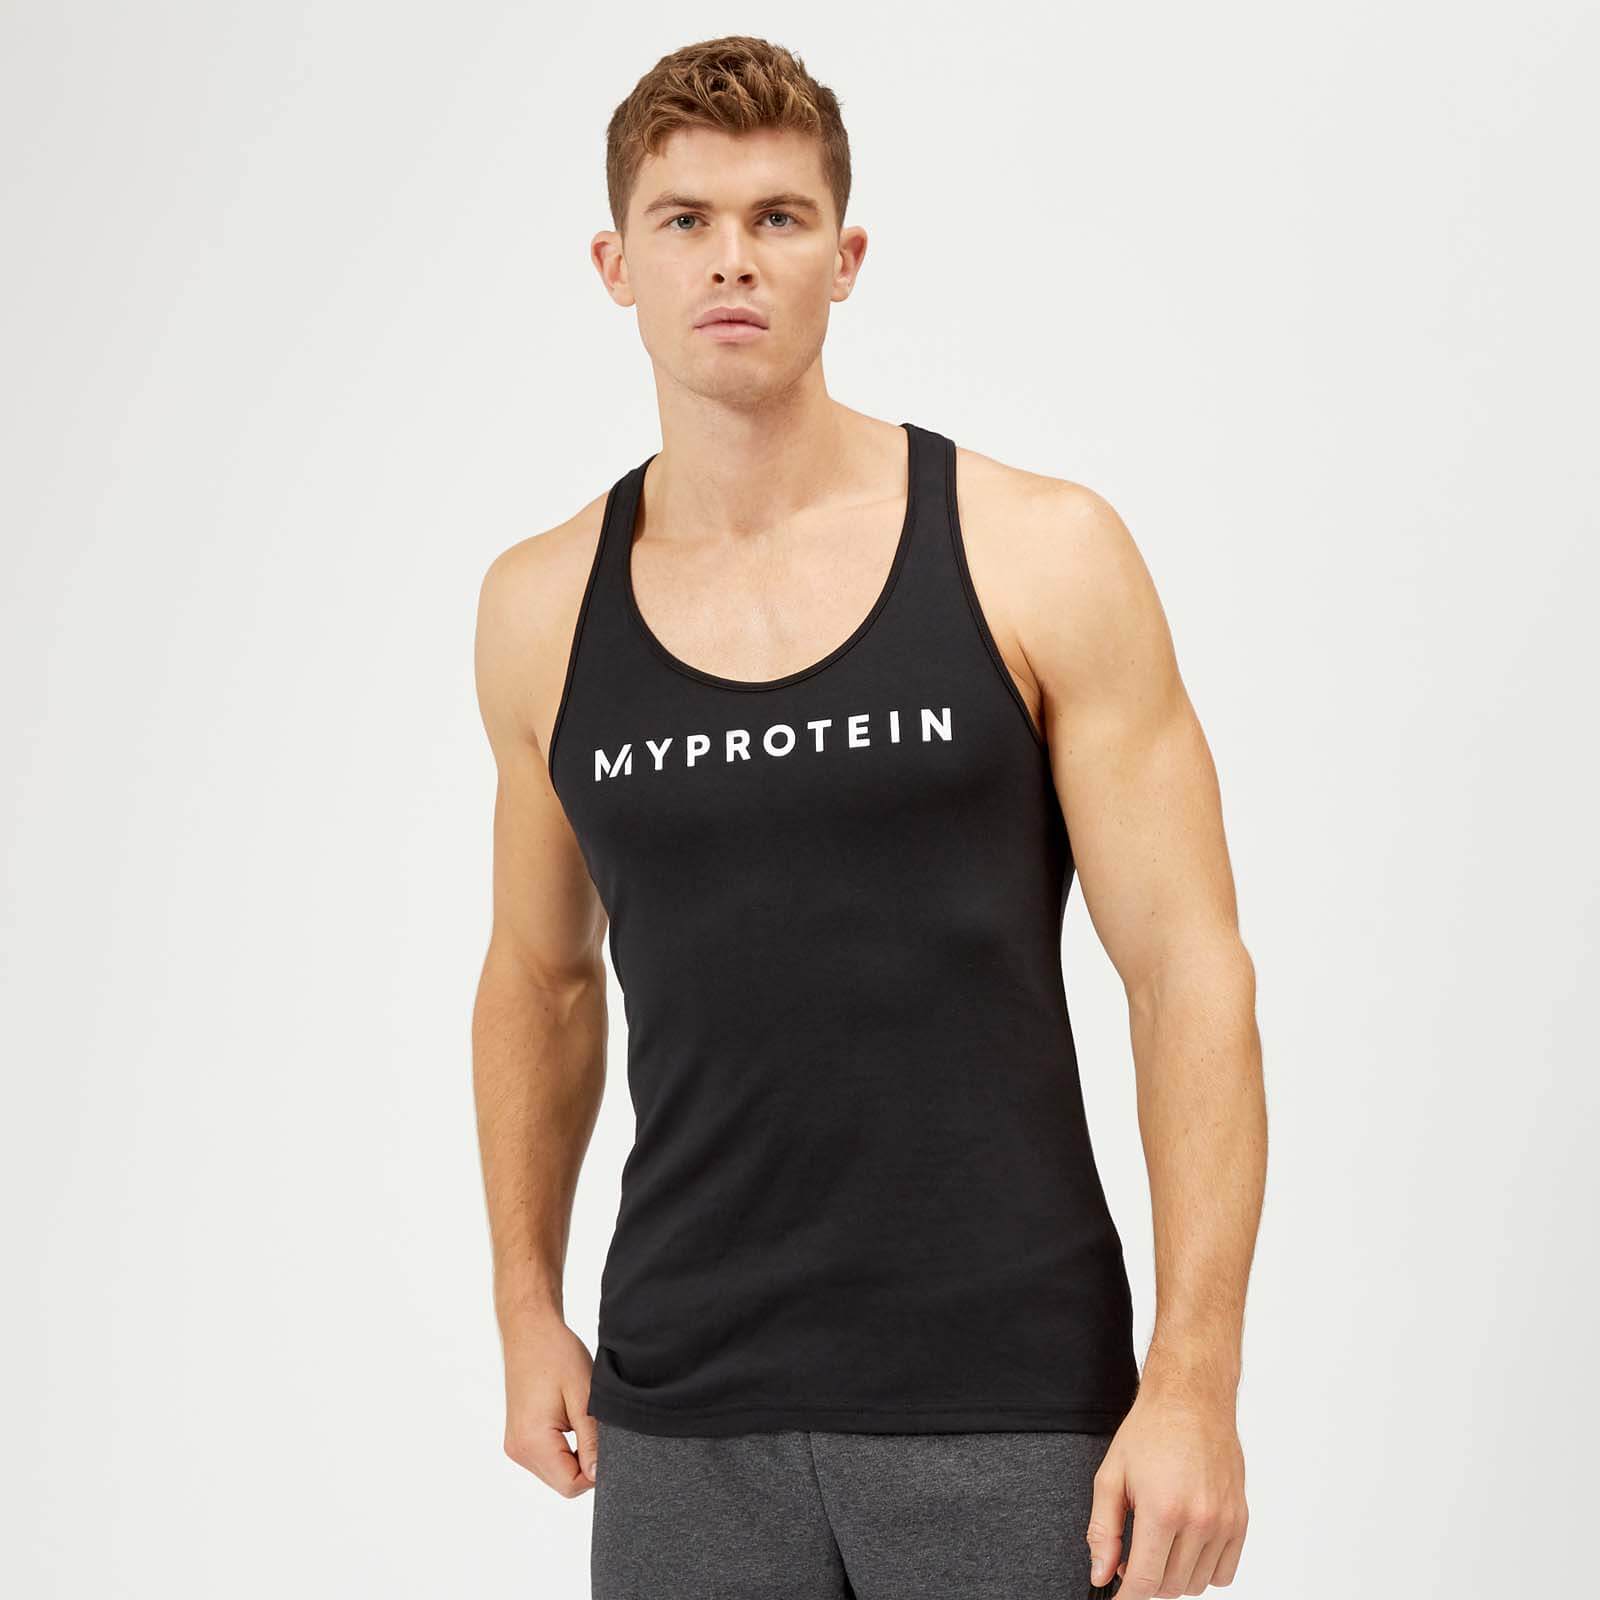 Myprotein Het original stringerhemd - XS